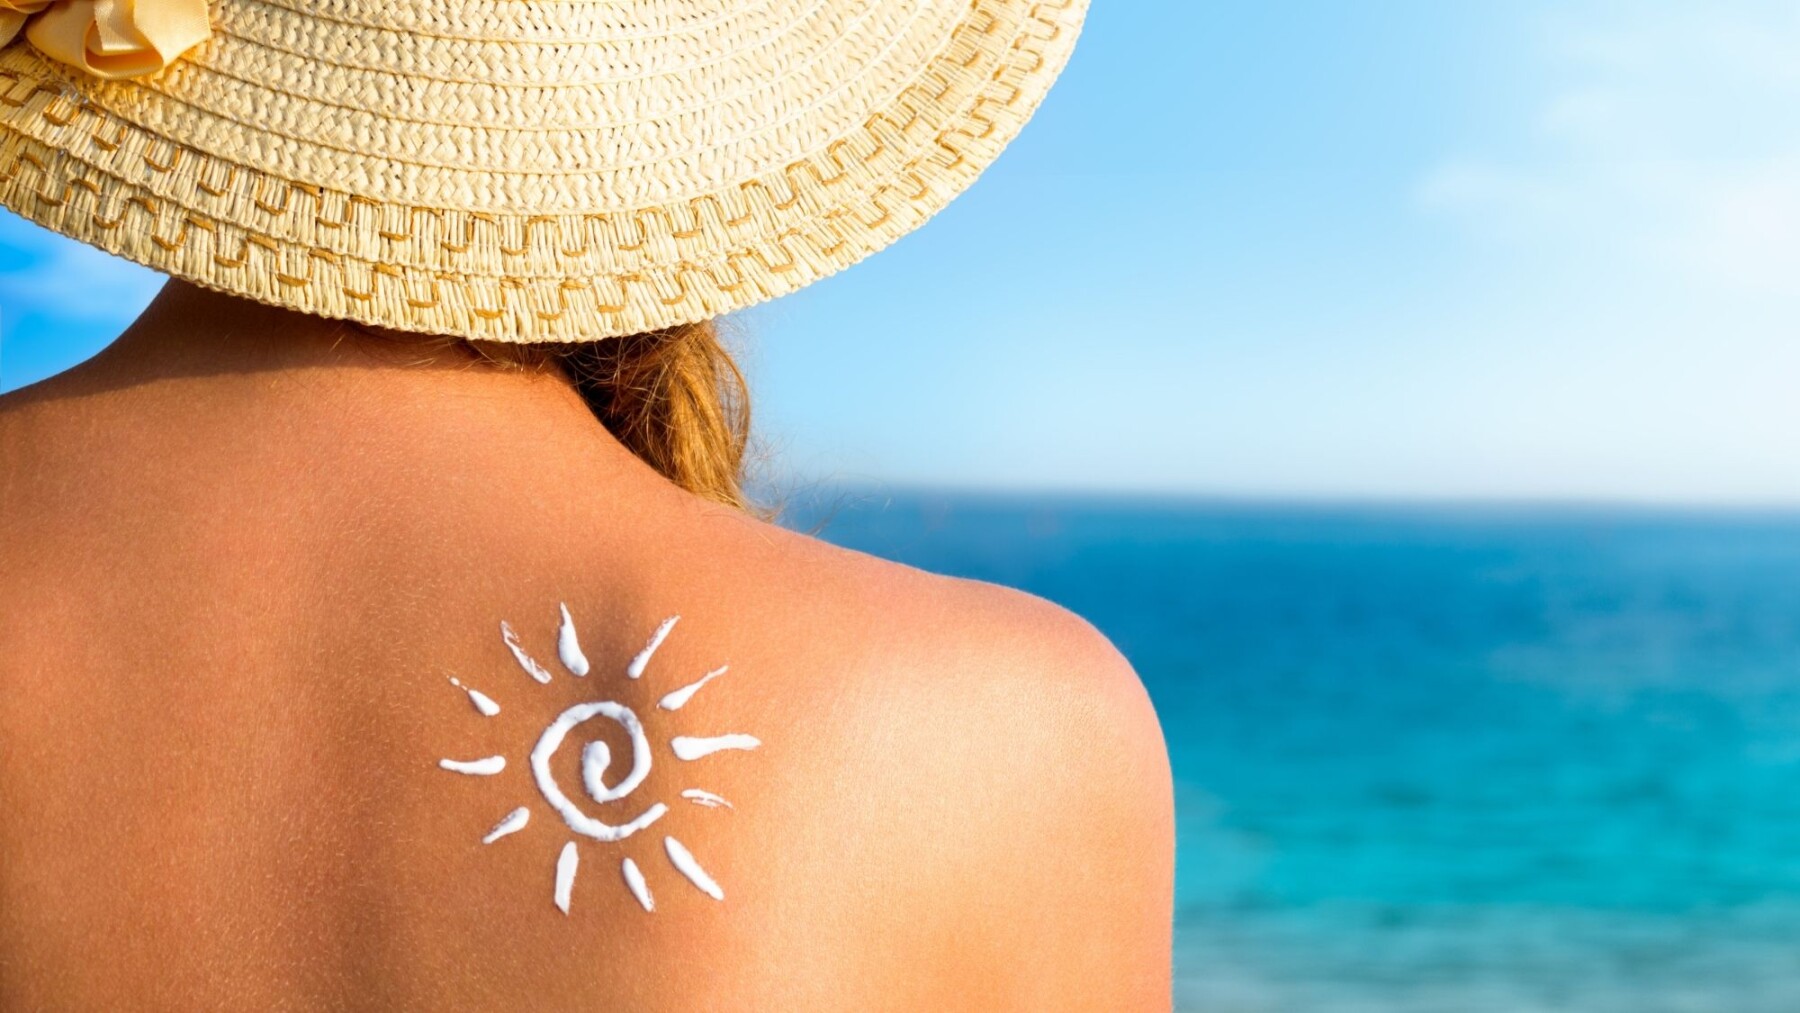 Pourquoi faut-il mettre de la crème solaire ?